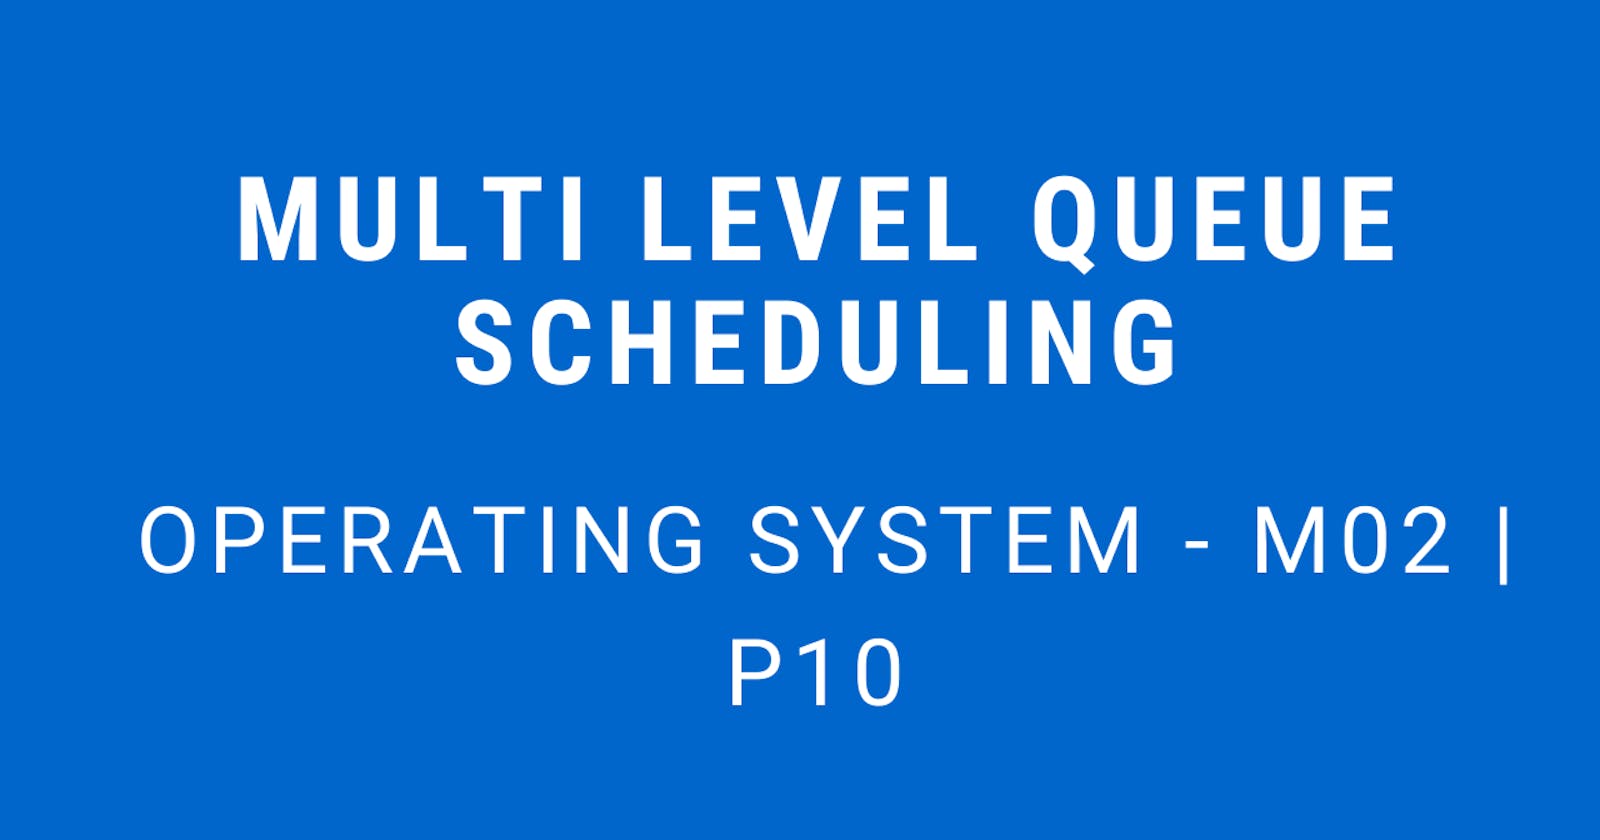 Multi Level Queue Scheduling | Operating System - M02 P10